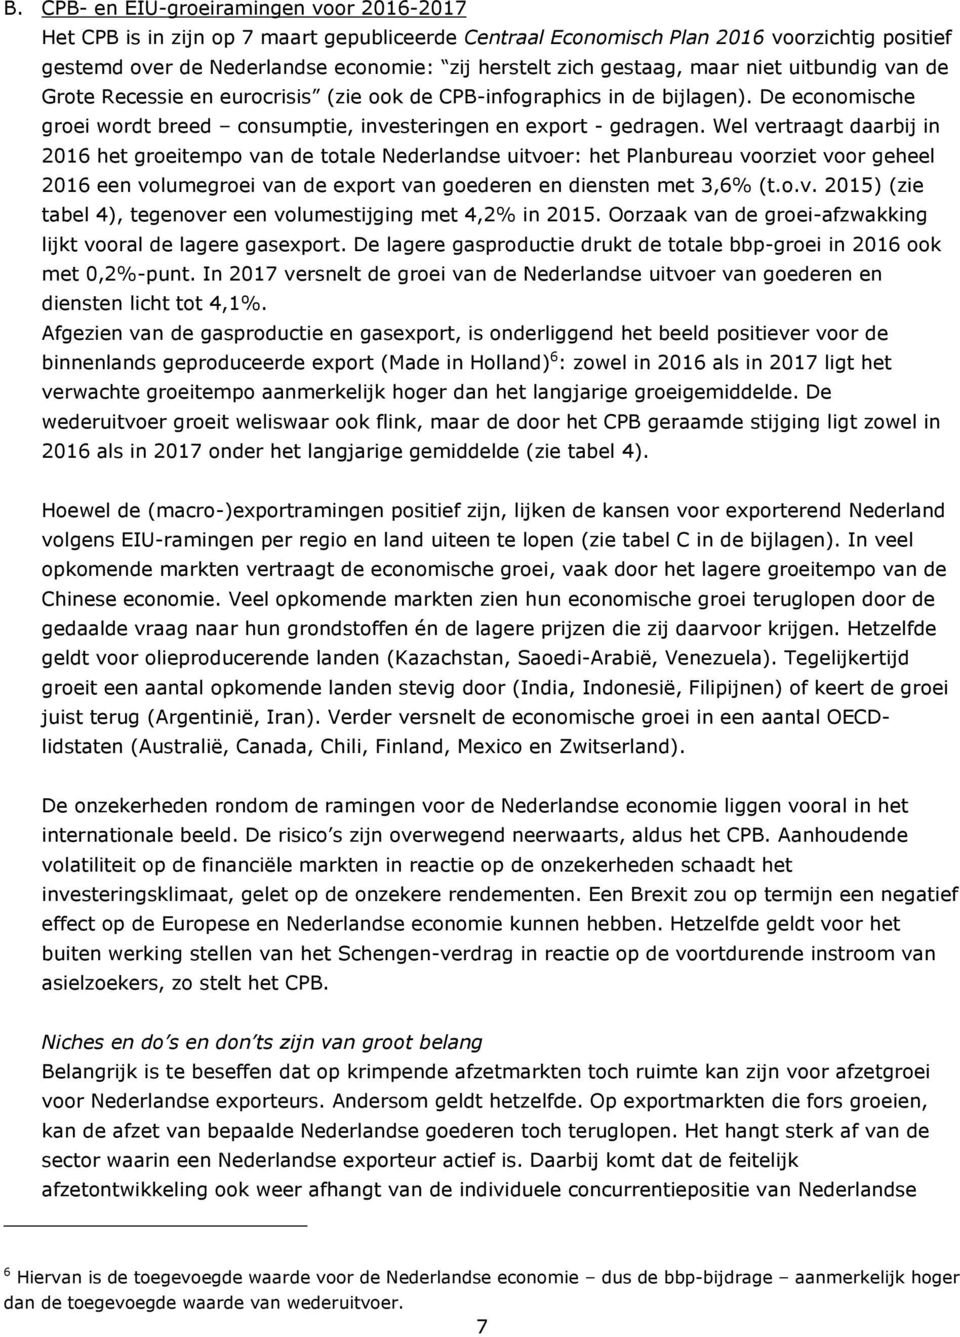 Wel vertraagt daarbij in 2016 het groeitempo van de totale Nederlandse uitvoer: het Planbureau voorziet voor geheel 2016 een volumegroei van de export van goederen en diensten met 3,6% (t.o.v. 2015) (zie tabel 4), tegenover een volumestijging met 4,2% in 2015.